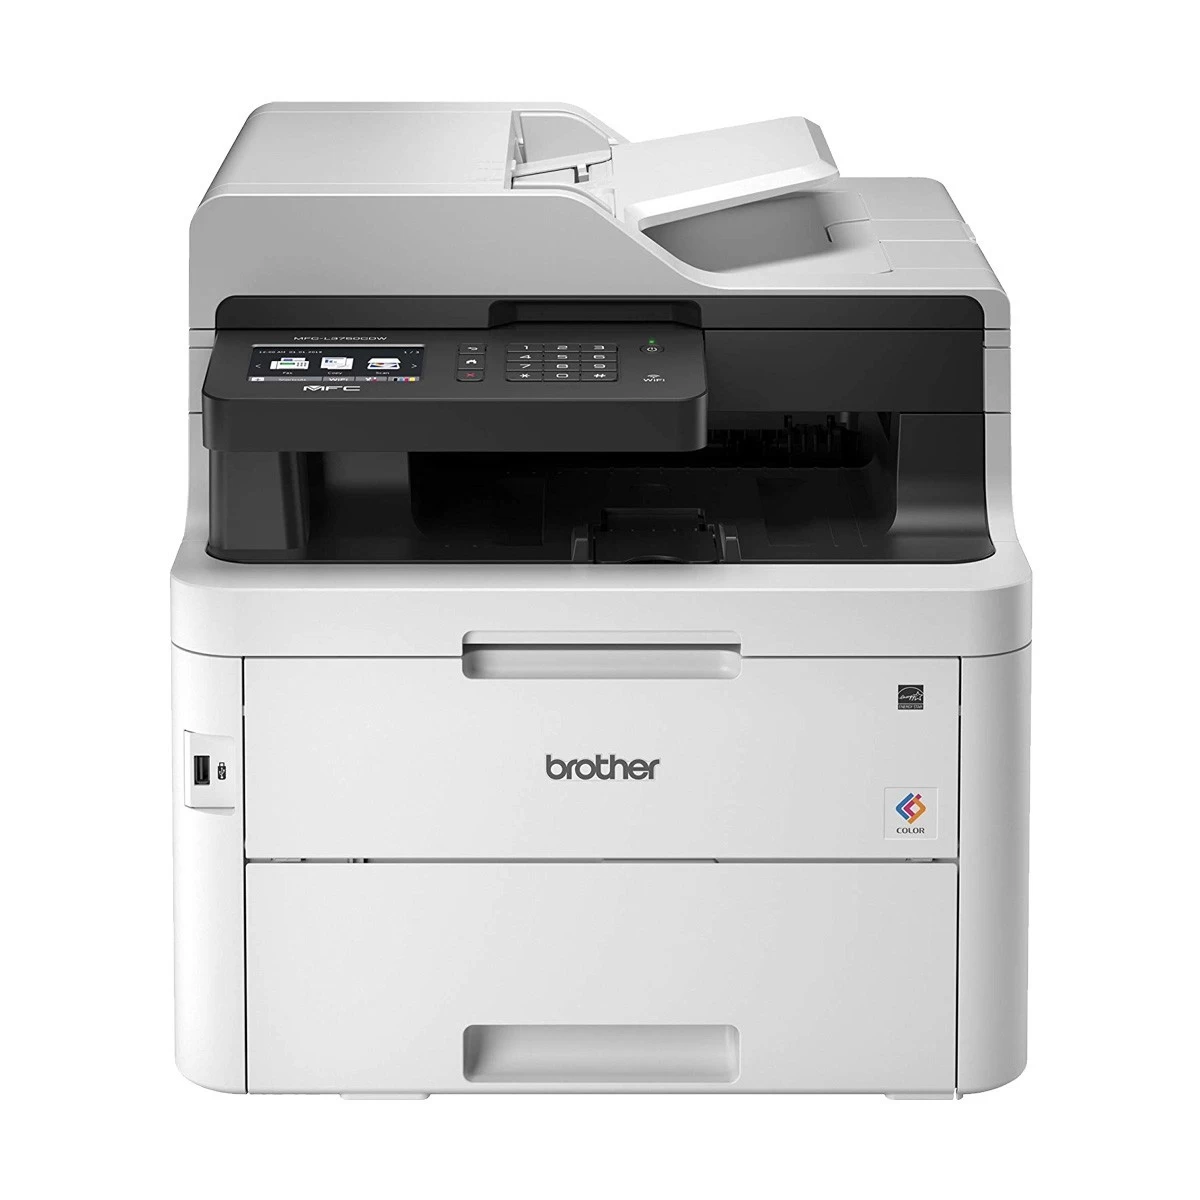 Brother MFC-L3750CDW Color Laser Printer